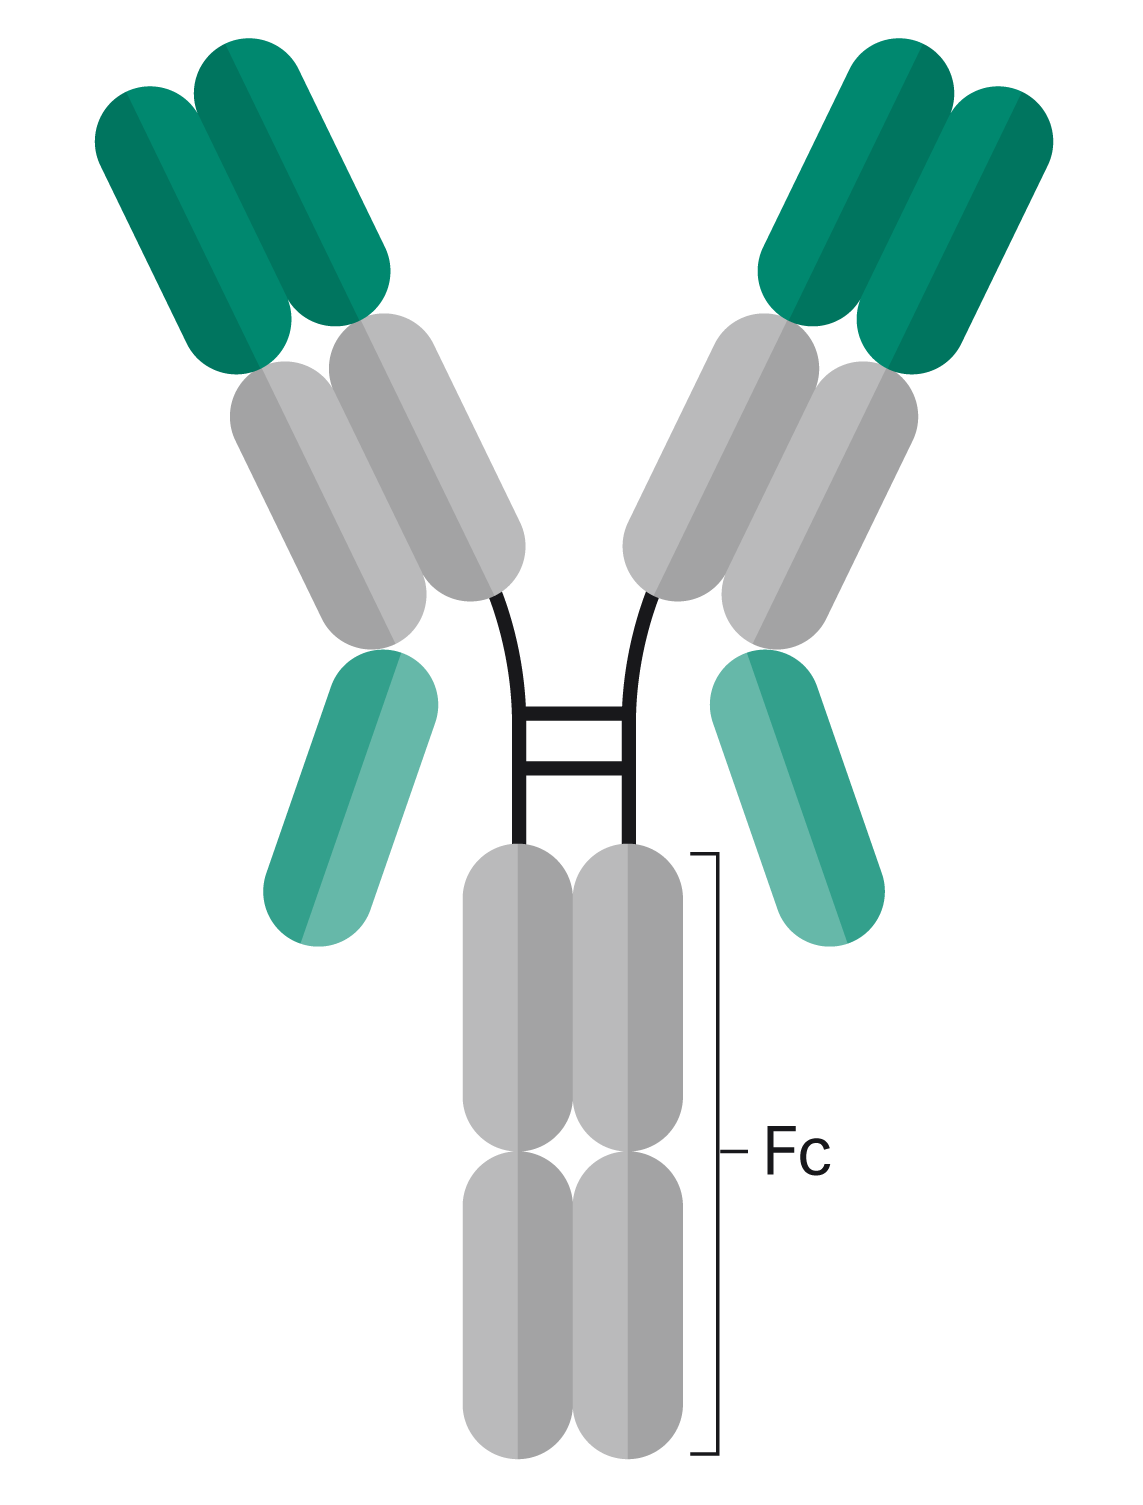 本案例中的双特异性抗体是重组蛋白，与轻链（浅绿色部分所示）的 c 端连接。